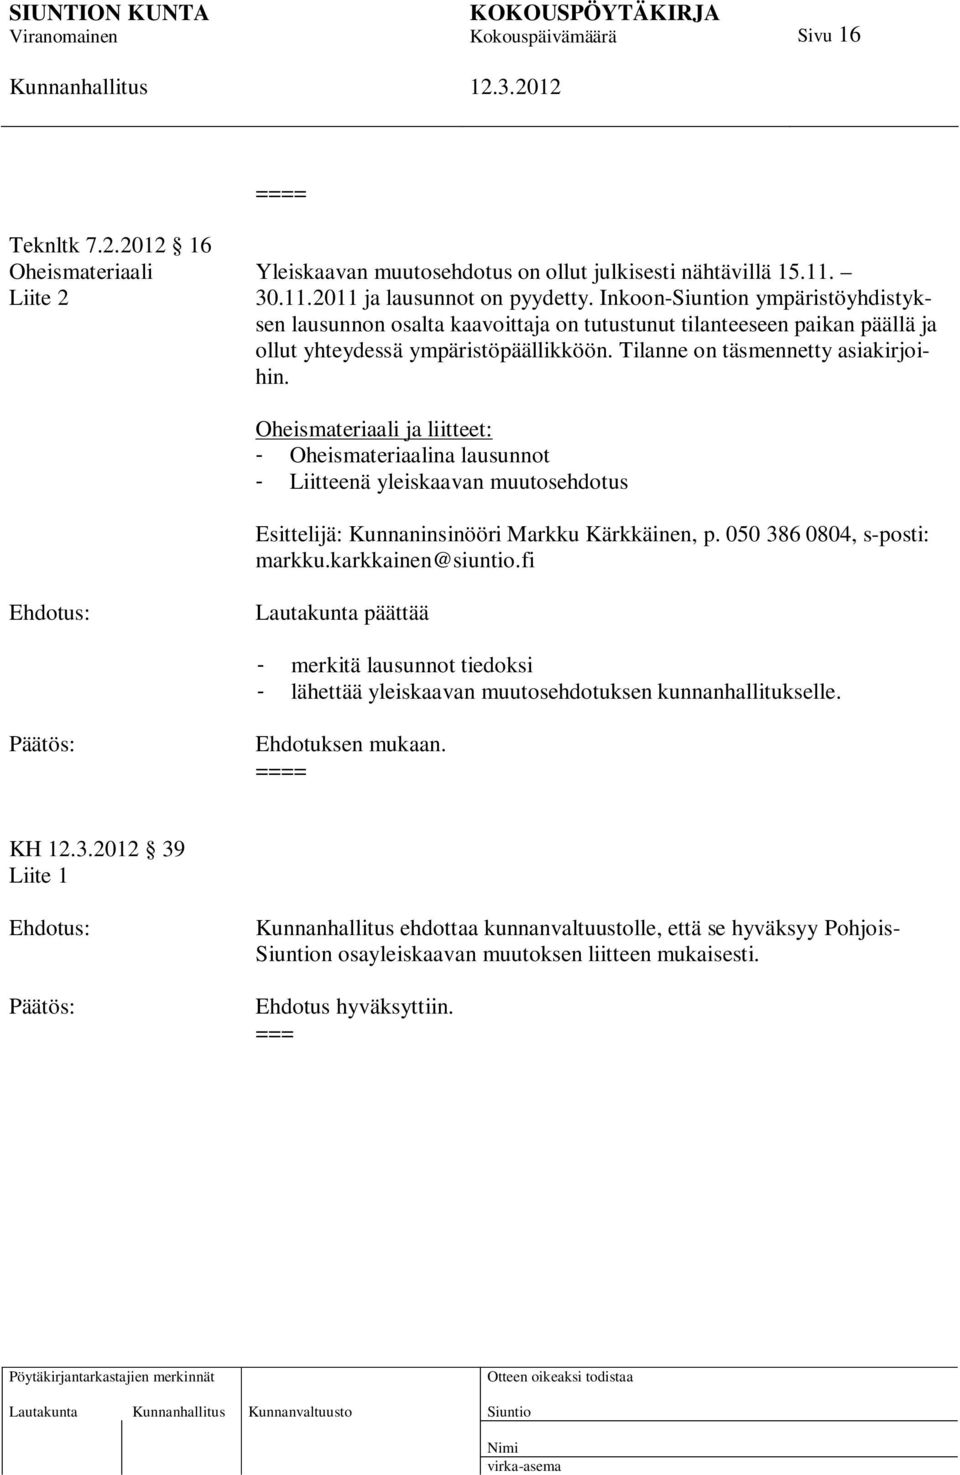 Oheismateriaali ja liitteet: - Oheismateriaalina lausunnot - Liitteenä yleiskaavan muutosehdotus Esittelijä: Kunnaninsinööri Markku Kärkkäinen, p. 050 386 0804, s-posti: markku.karkkainen@siuntio.